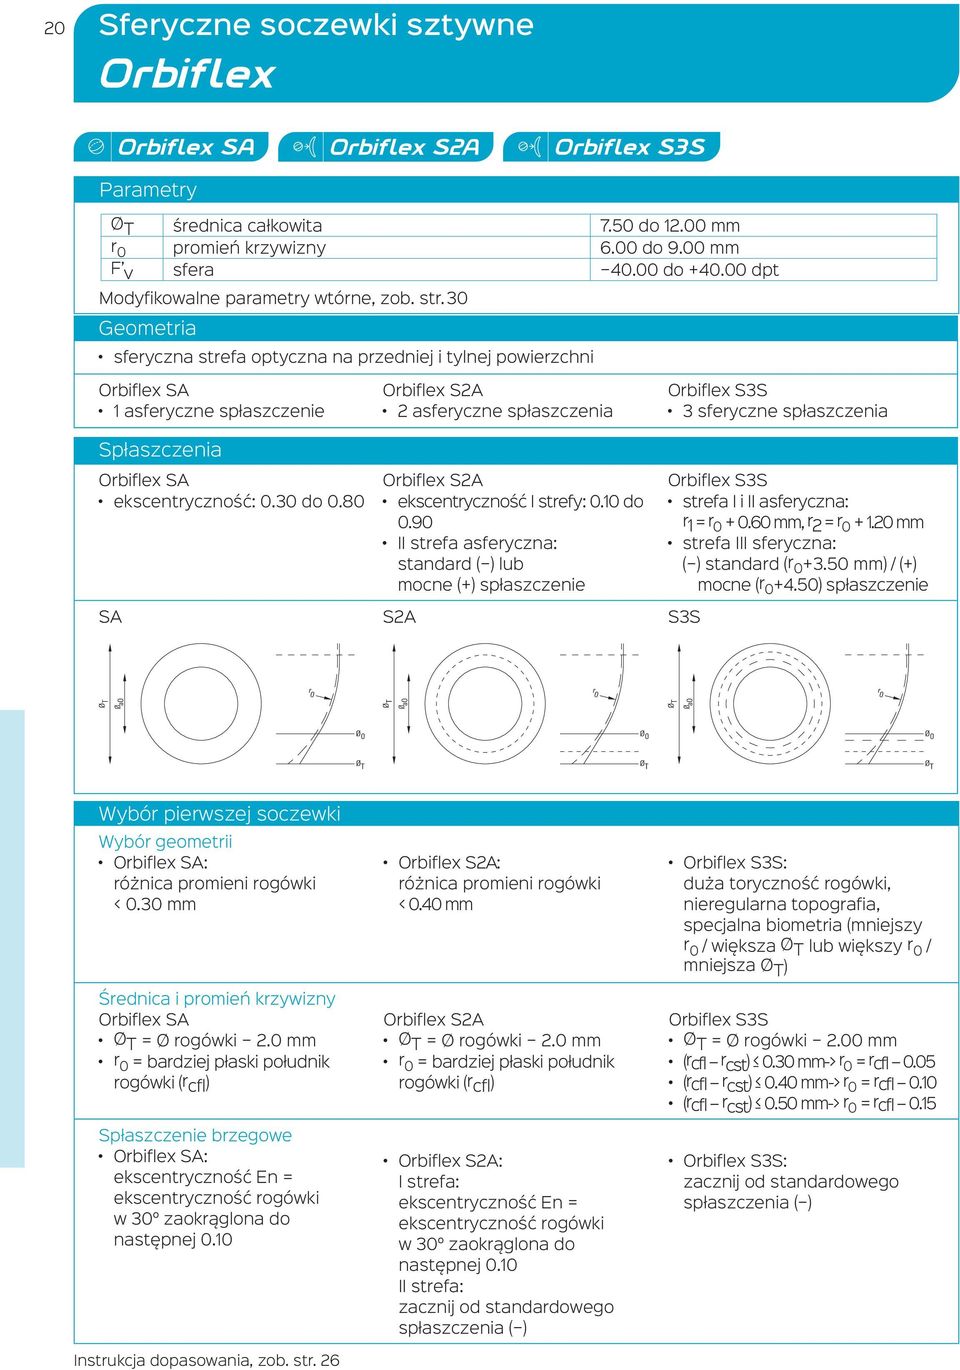 80 Orbiflex S2A 2 asferyczne spłaszczenia Orbiflex S2A ekscentryczność I strefy: 0.10 do 0.